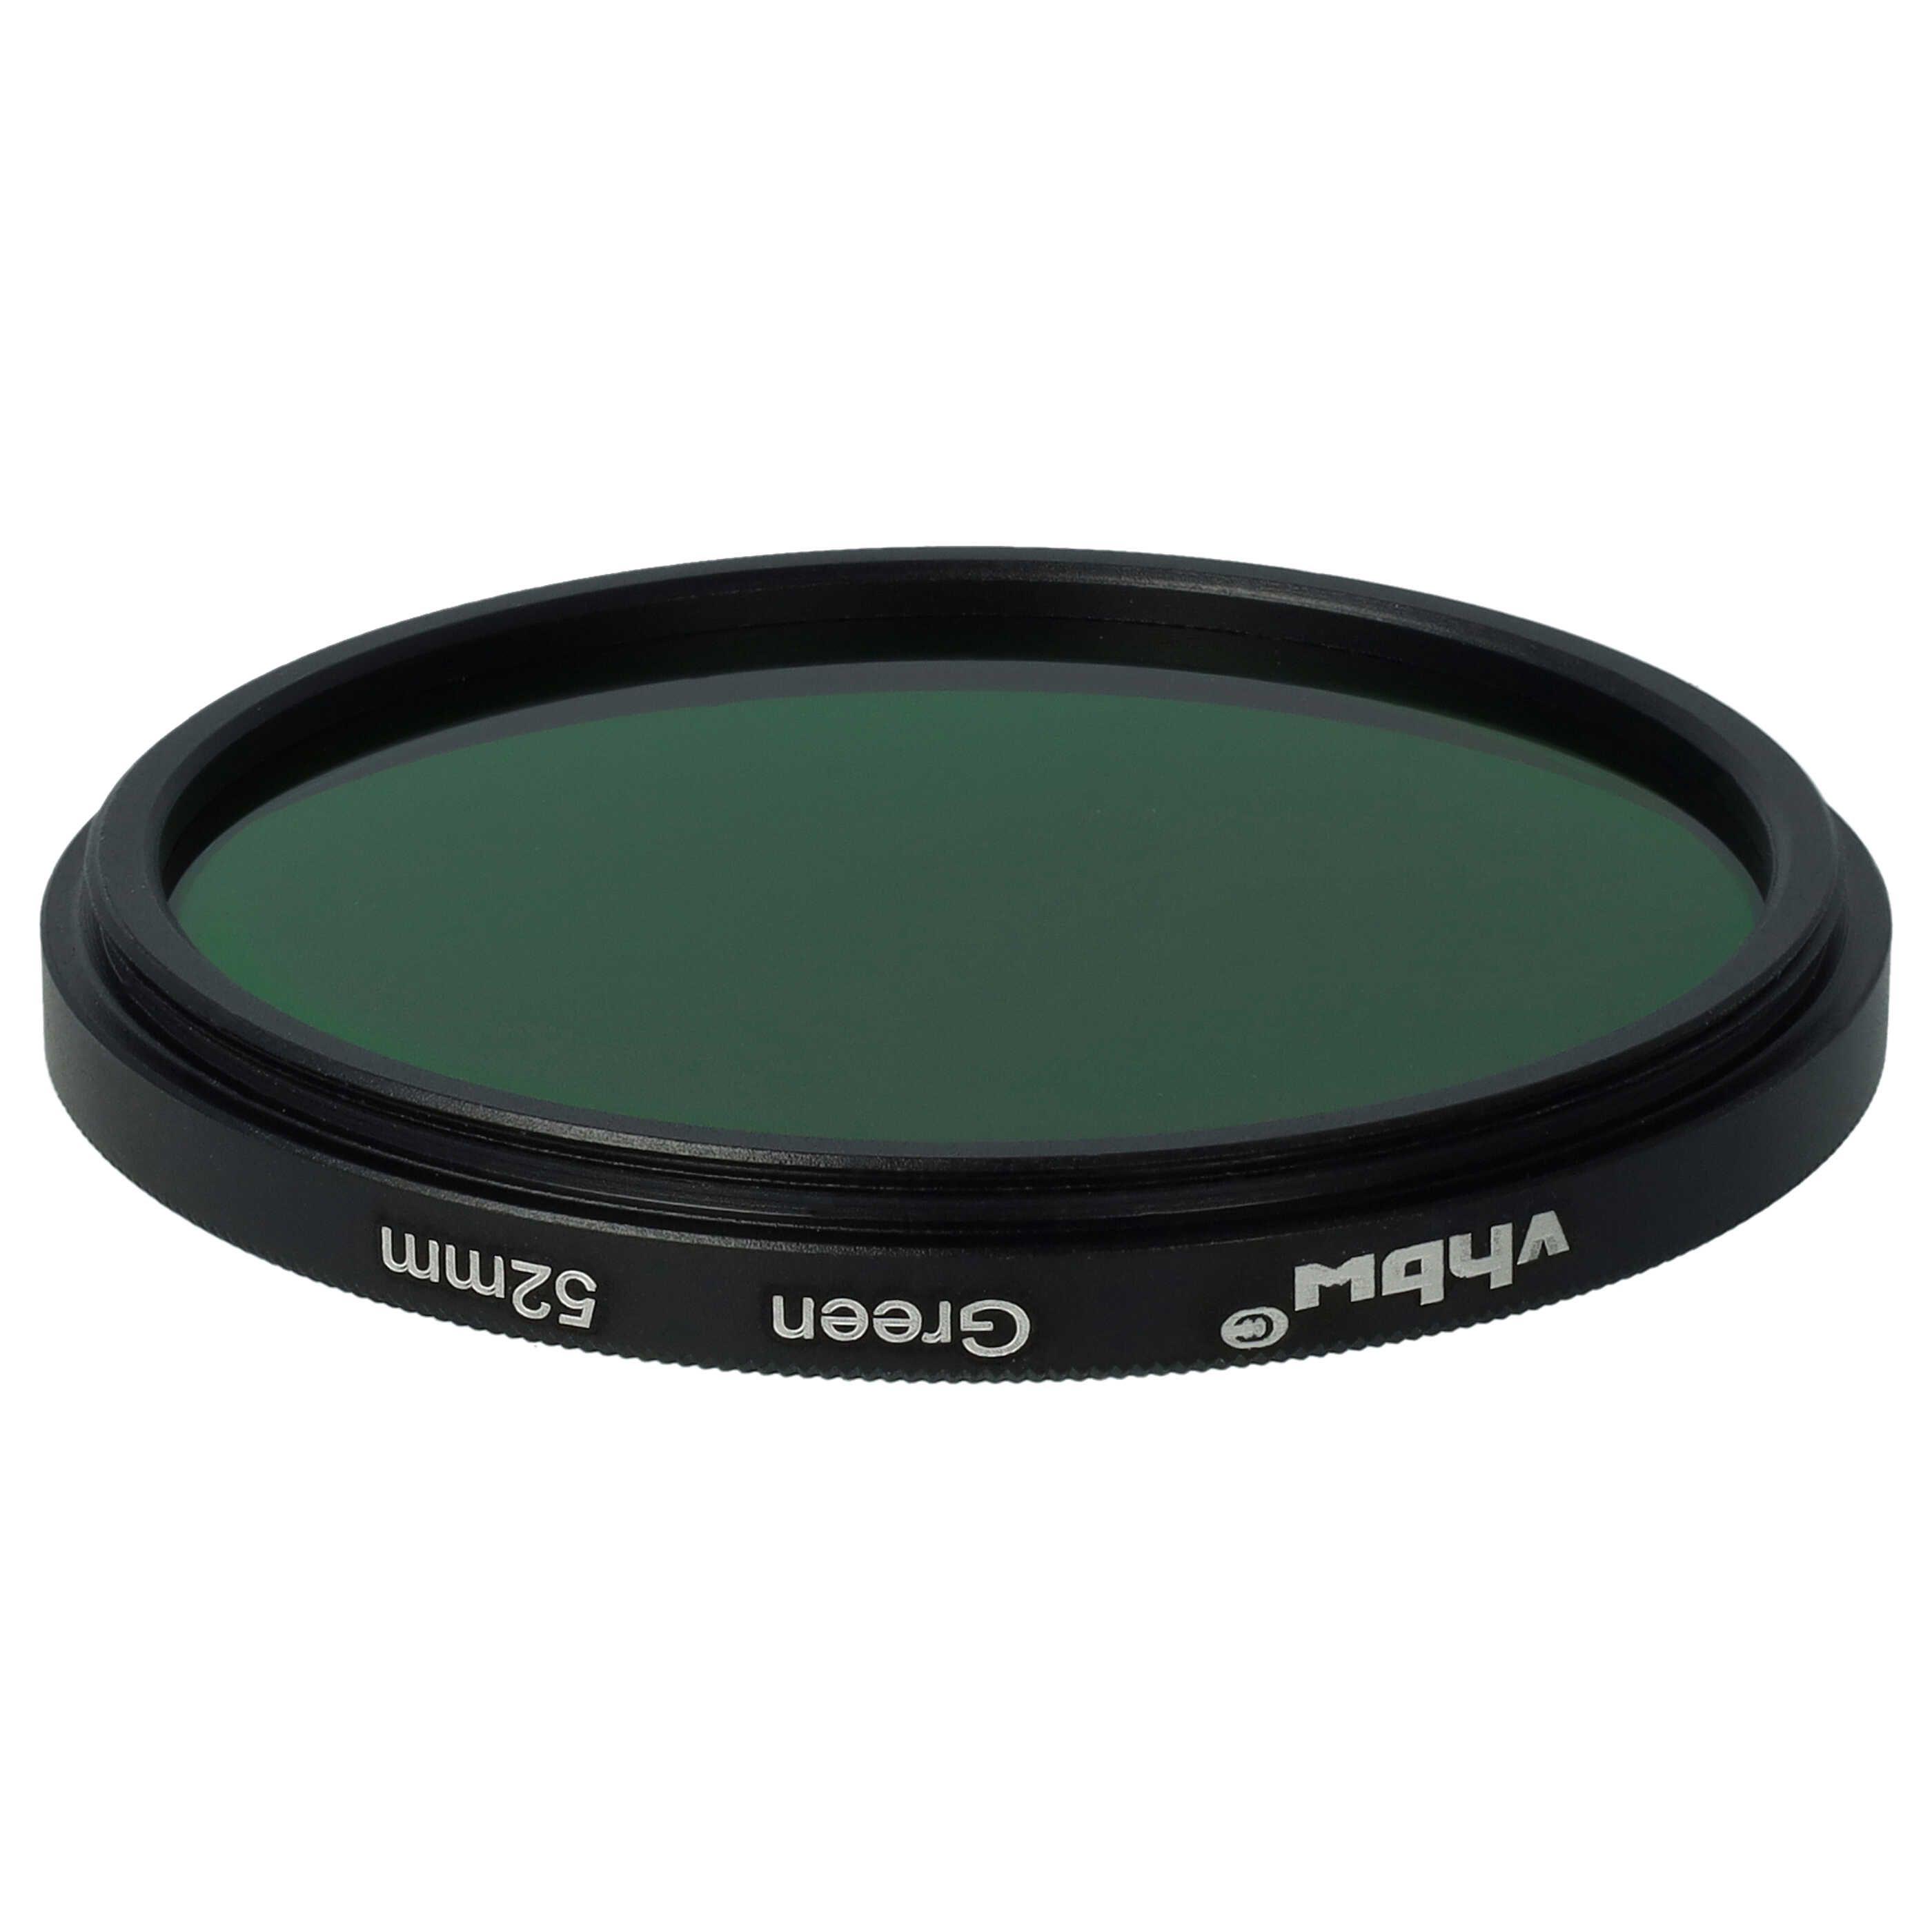 Farbfilter grün passend für Kamera Objektive mit 52 mm Filtergewinde - Grünfilter